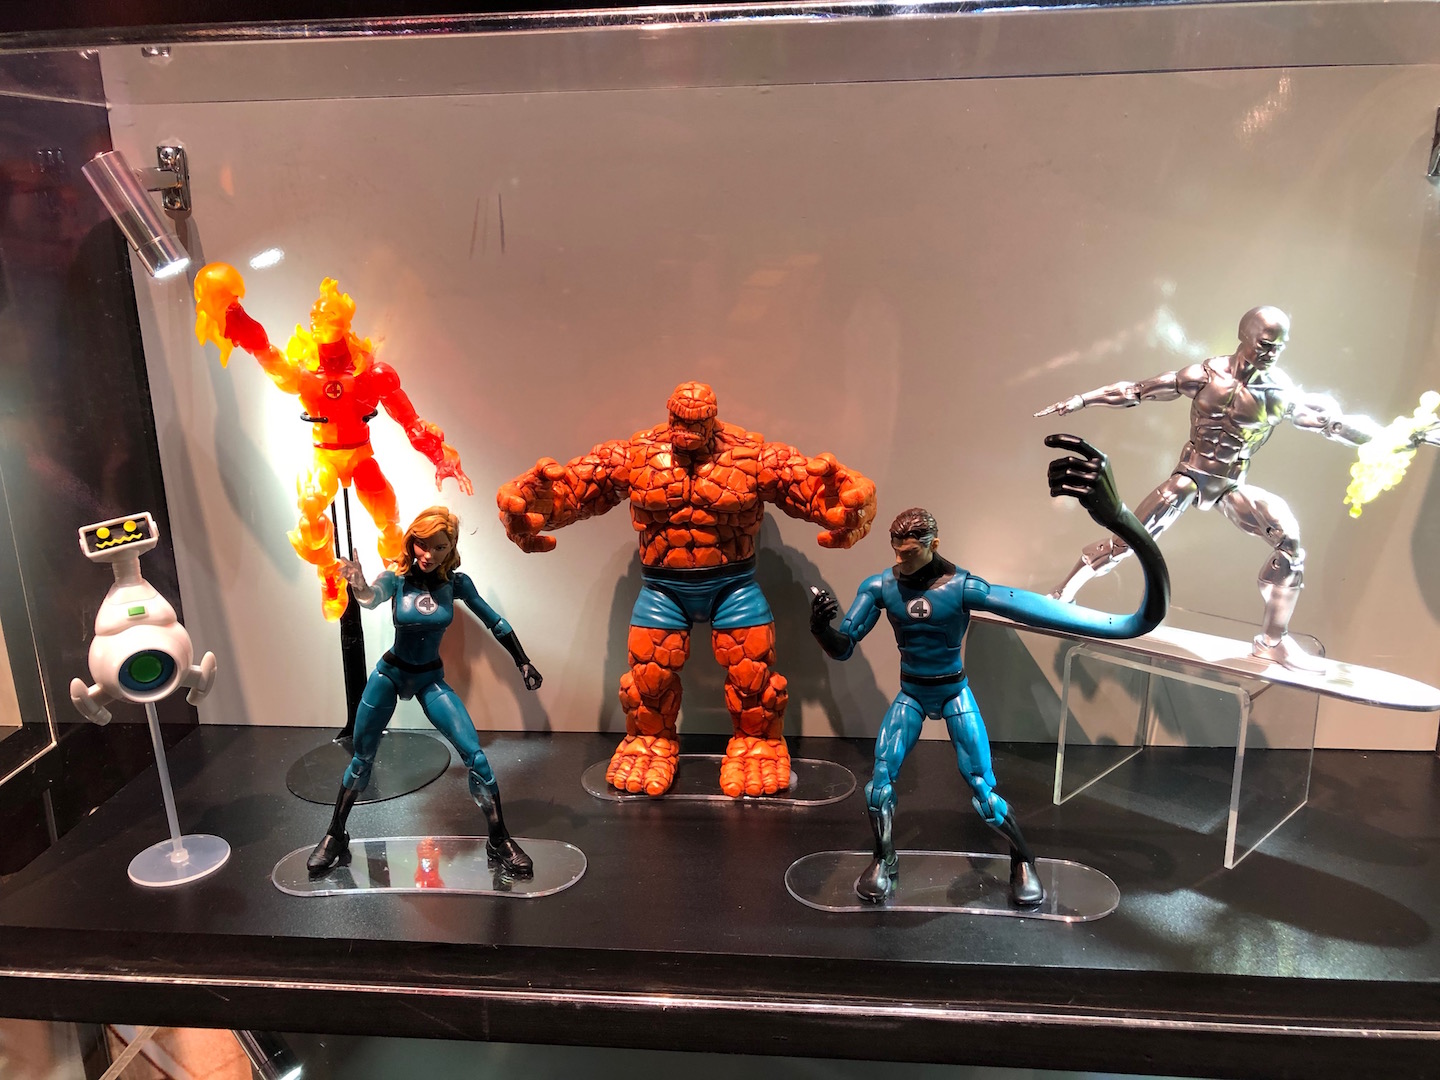 2019 marvel legends figures